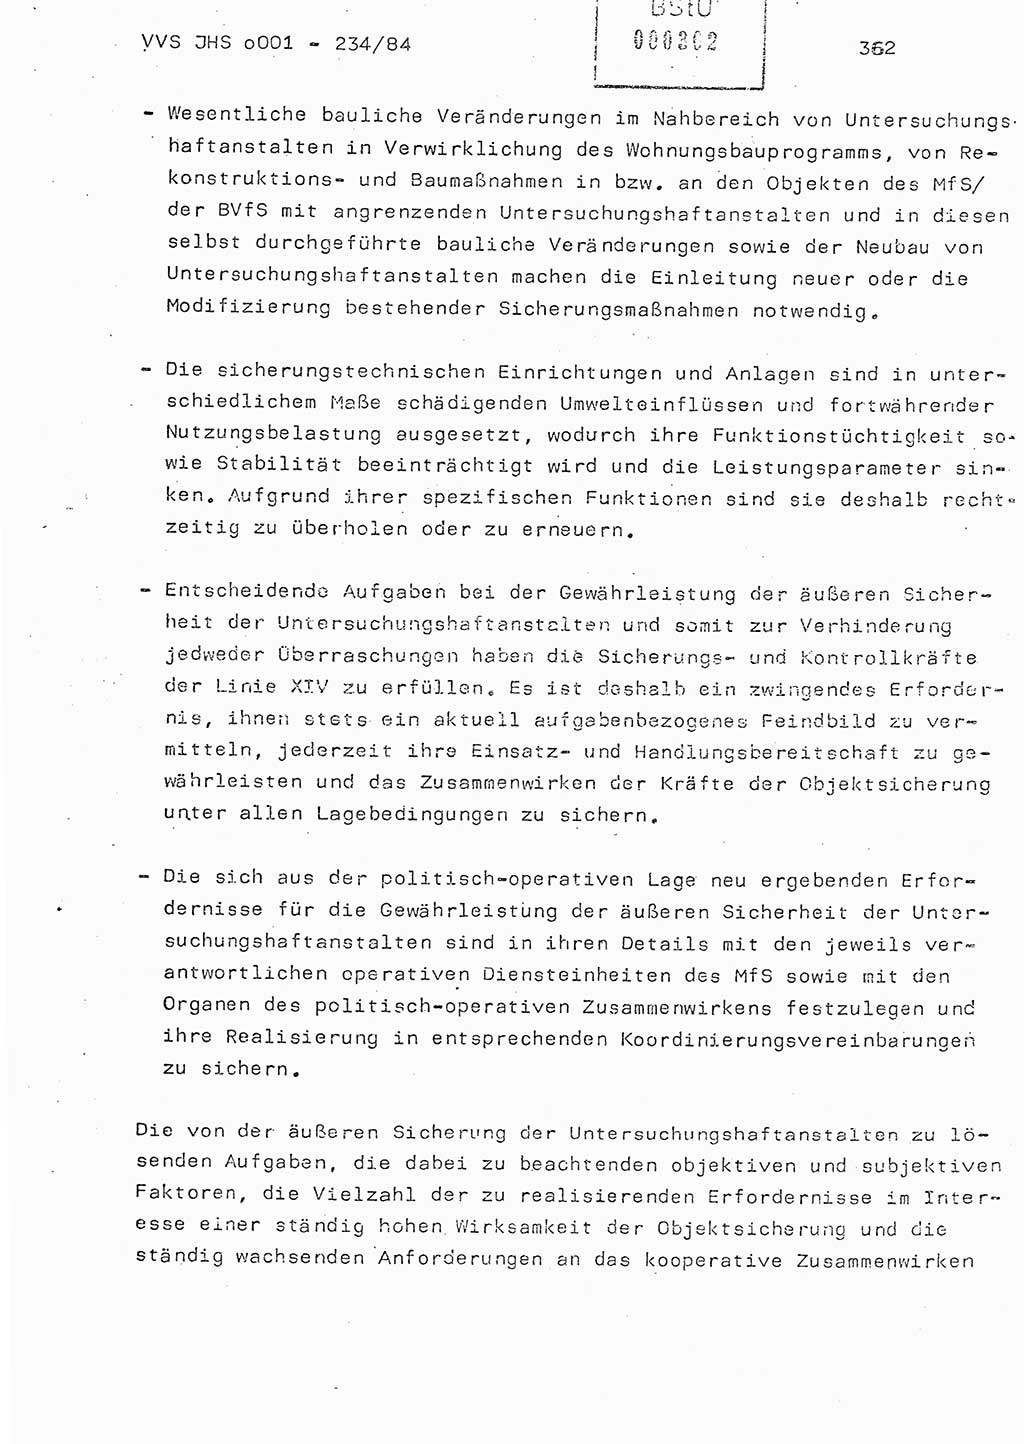 Dissertation Oberst Siegfried Rataizick (Abt. ⅩⅣ), Oberstleutnant Volkmar Heinz (Abt. ⅩⅣ), Oberstleutnant Werner Stein (HA Ⅸ), Hauptmann Heinz Conrad (JHS), Ministerium für Staatssicherheit (MfS) [Deutsche Demokratische Republik (DDR)], Juristische Hochschule (JHS), Vertrauliche Verschlußsache (VVS) o001-234/84, Potsdam 1984, Seite 362 (Diss. MfS DDR JHS VVS o001-234/84 1984, S. 362)